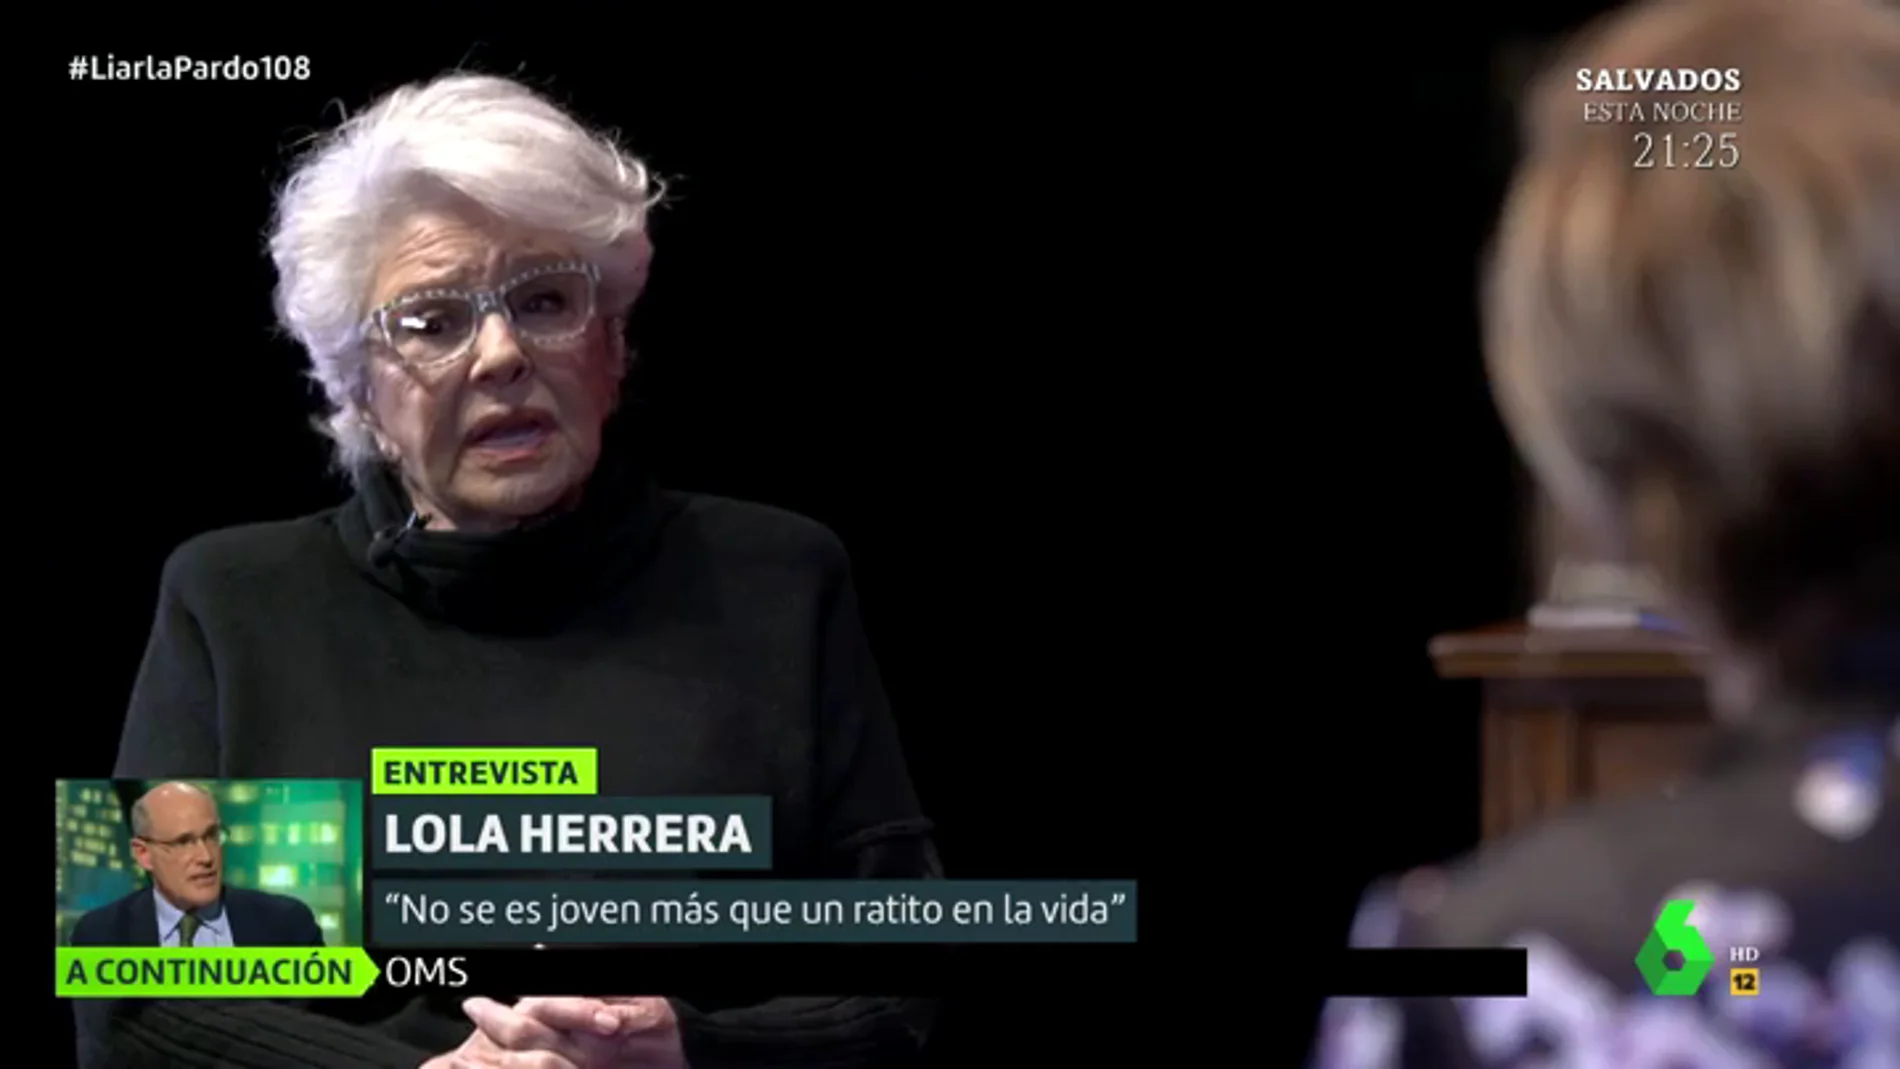 La reflexión de Lola Herrera sobre la etapa de la vejez: "Dice mucho de una sociedad donde la gente mayor sobra"